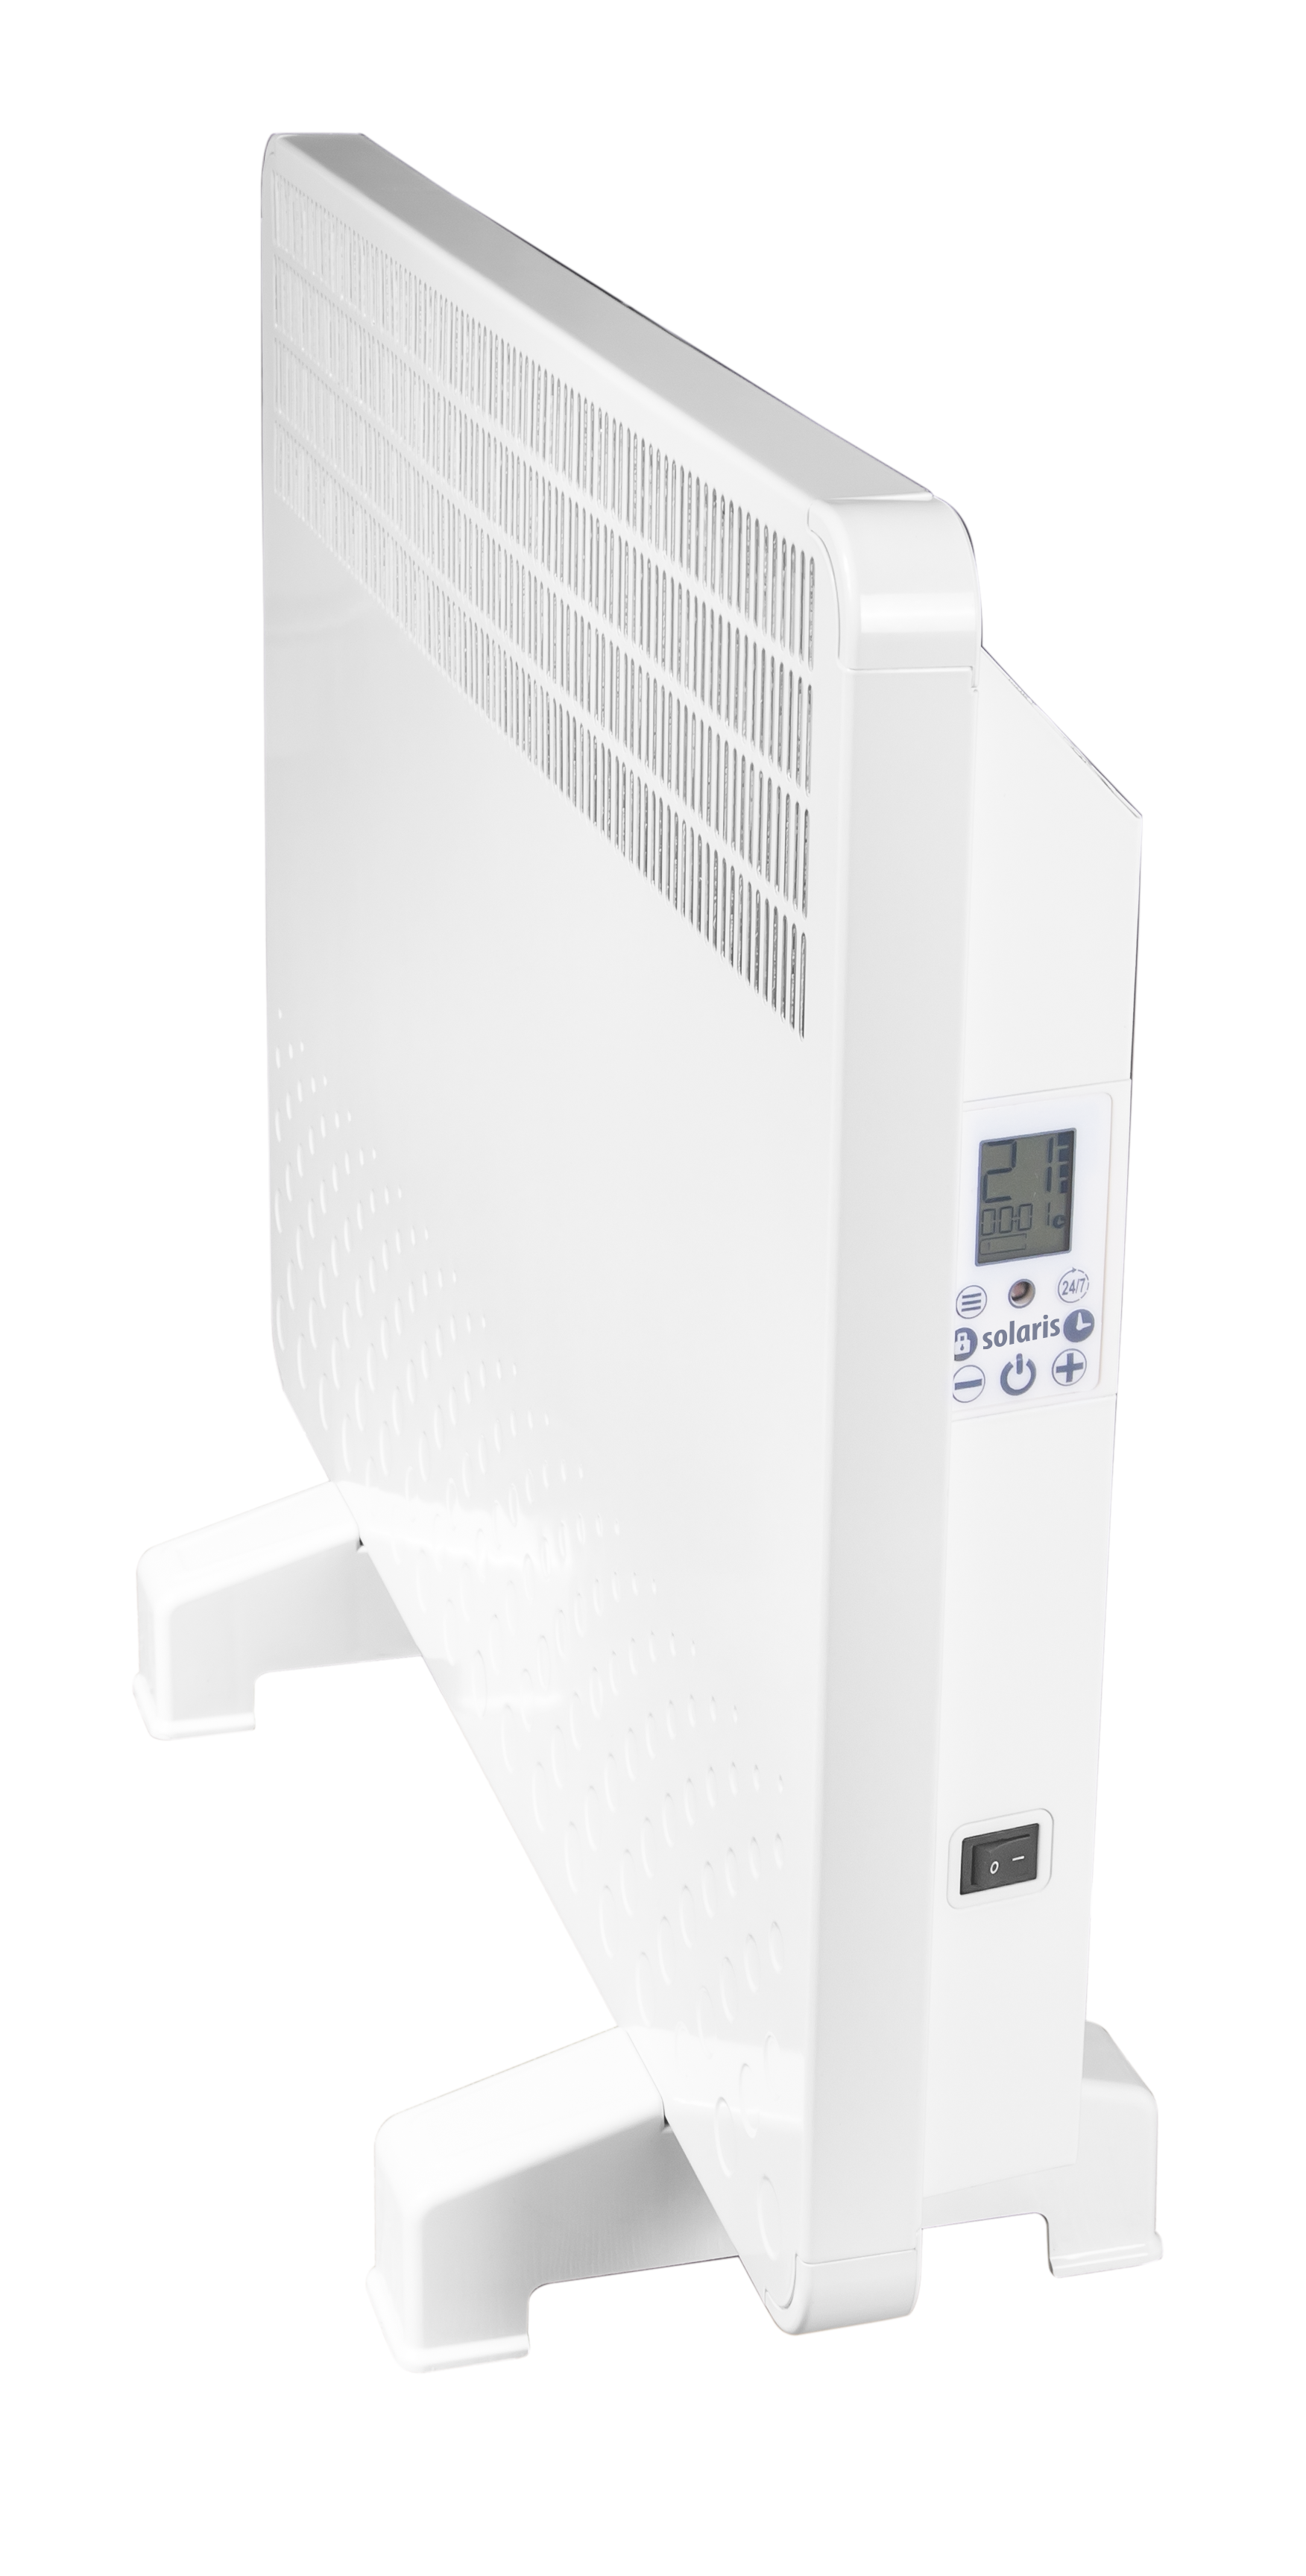 Convector electric de perete sau pardoseala Solaris KIP 1000 W, control electronic, Termostat de siguranta, termostat reglabil, IP 24, ERP 2018, pana la 12 mp 10:00